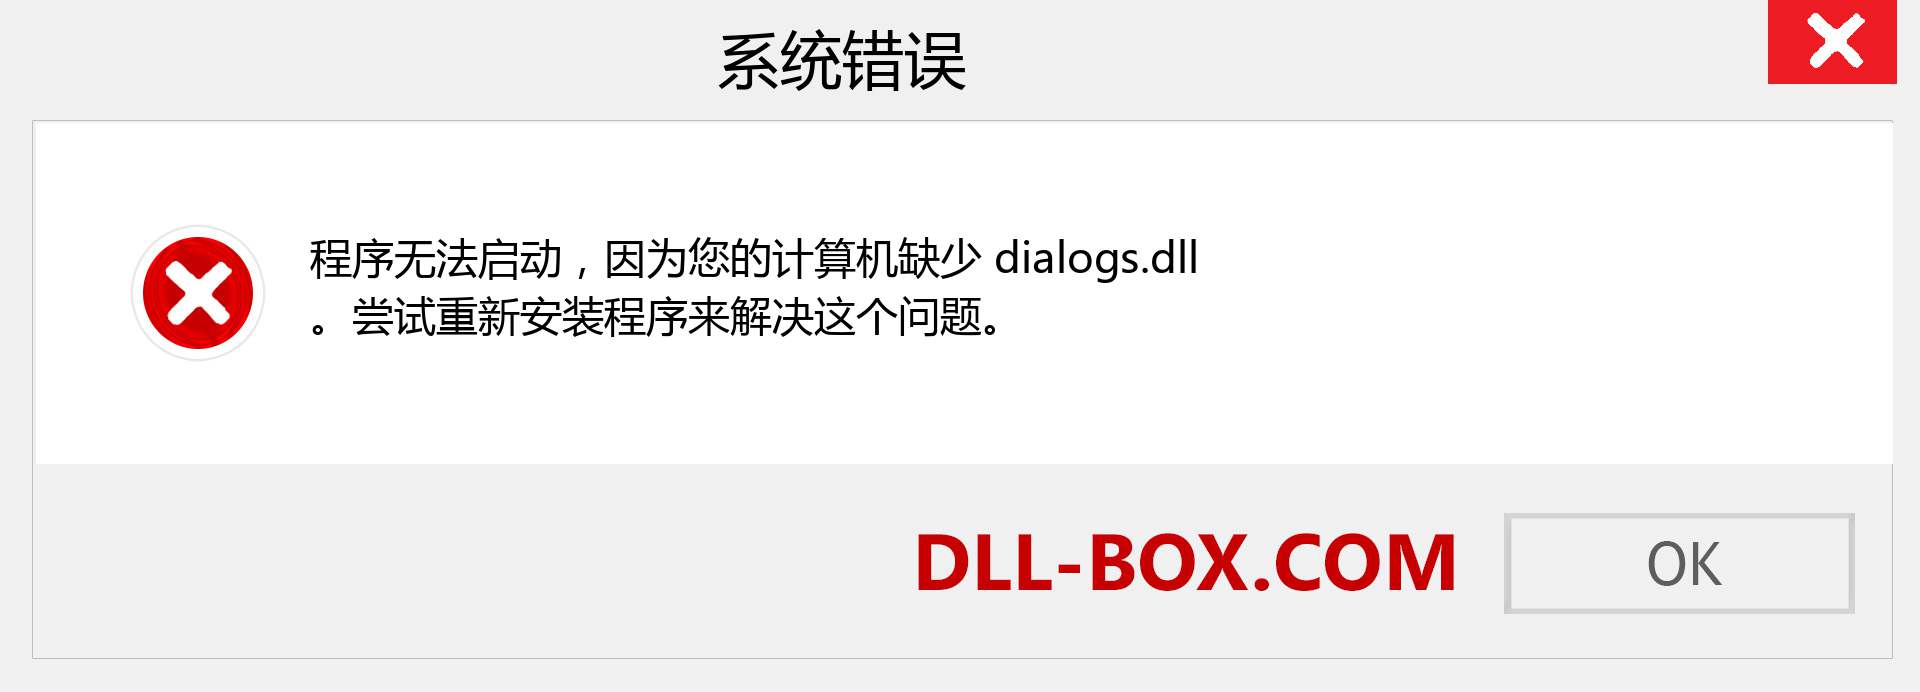 dialogs.dll 文件丢失？。 适用于 Windows 7、8、10 的下载 - 修复 Windows、照片、图像上的 dialogs dll 丢失错误